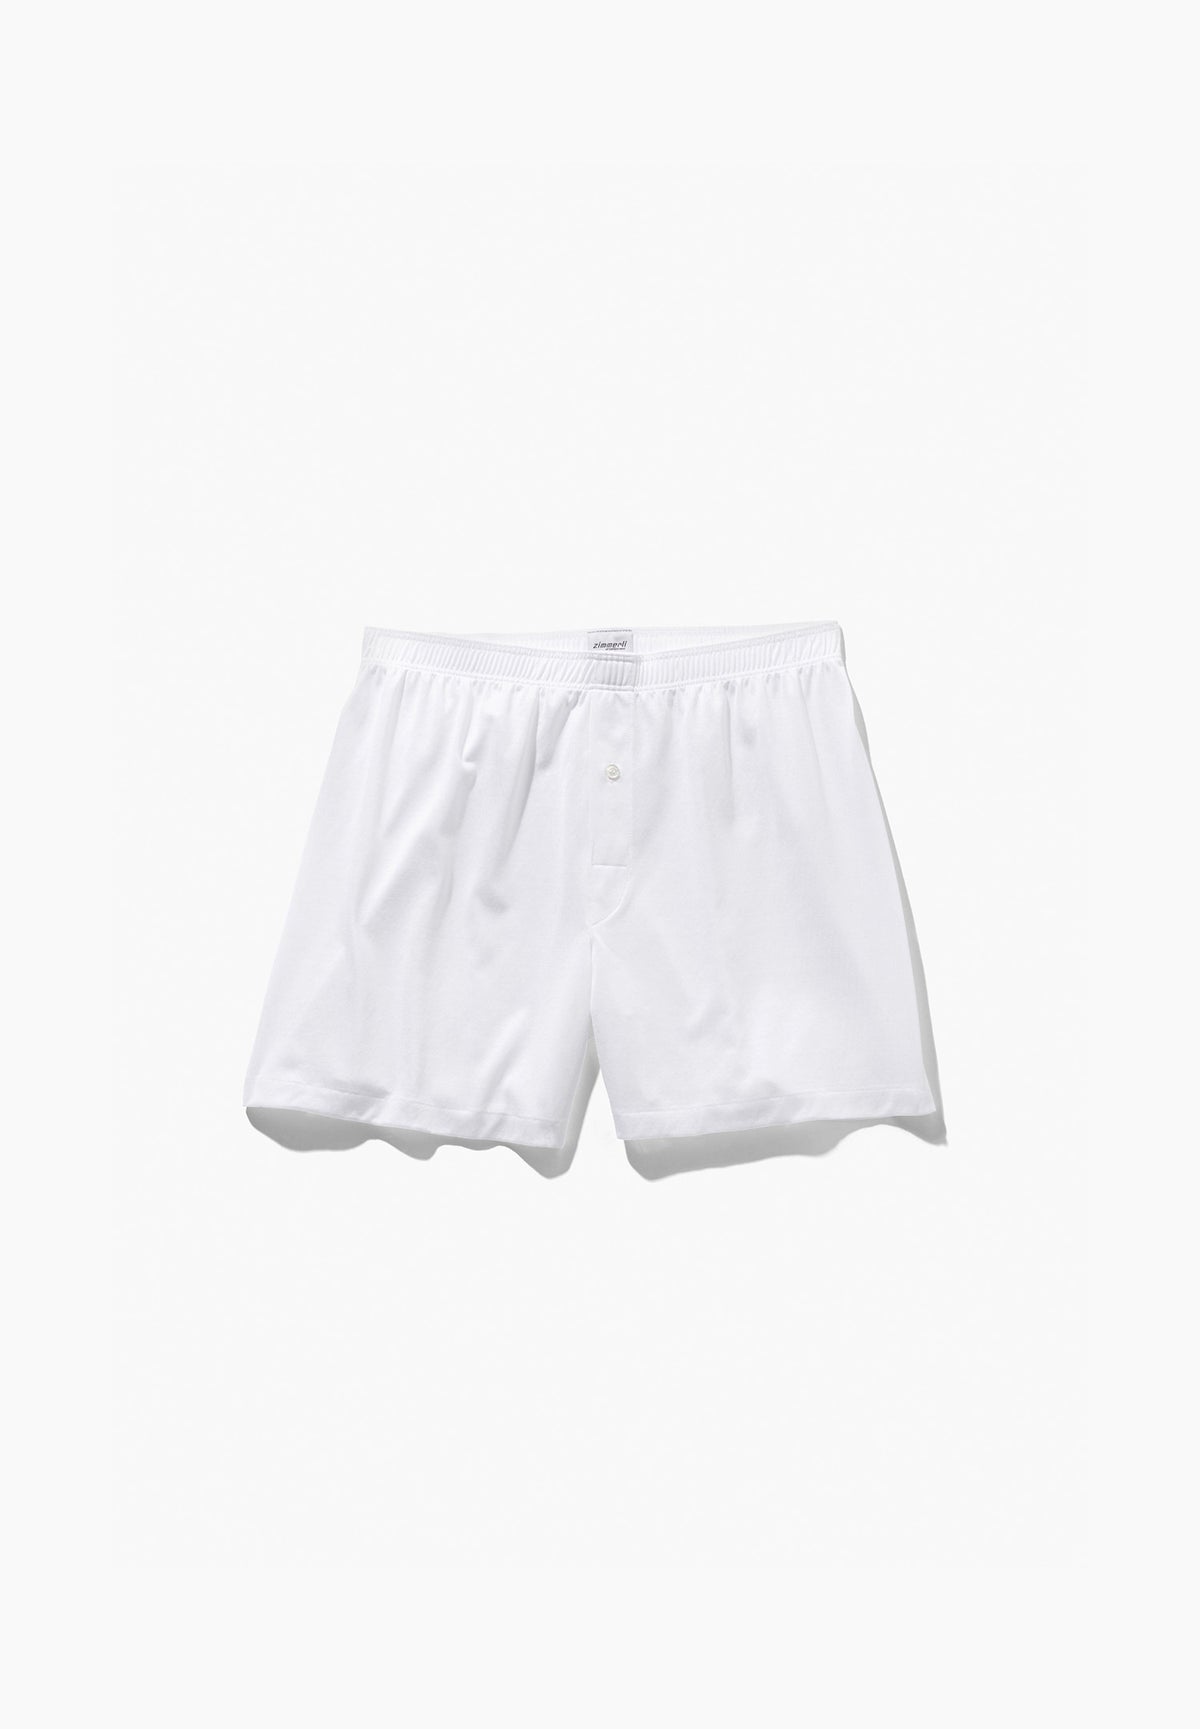 Cotton boxer shorts